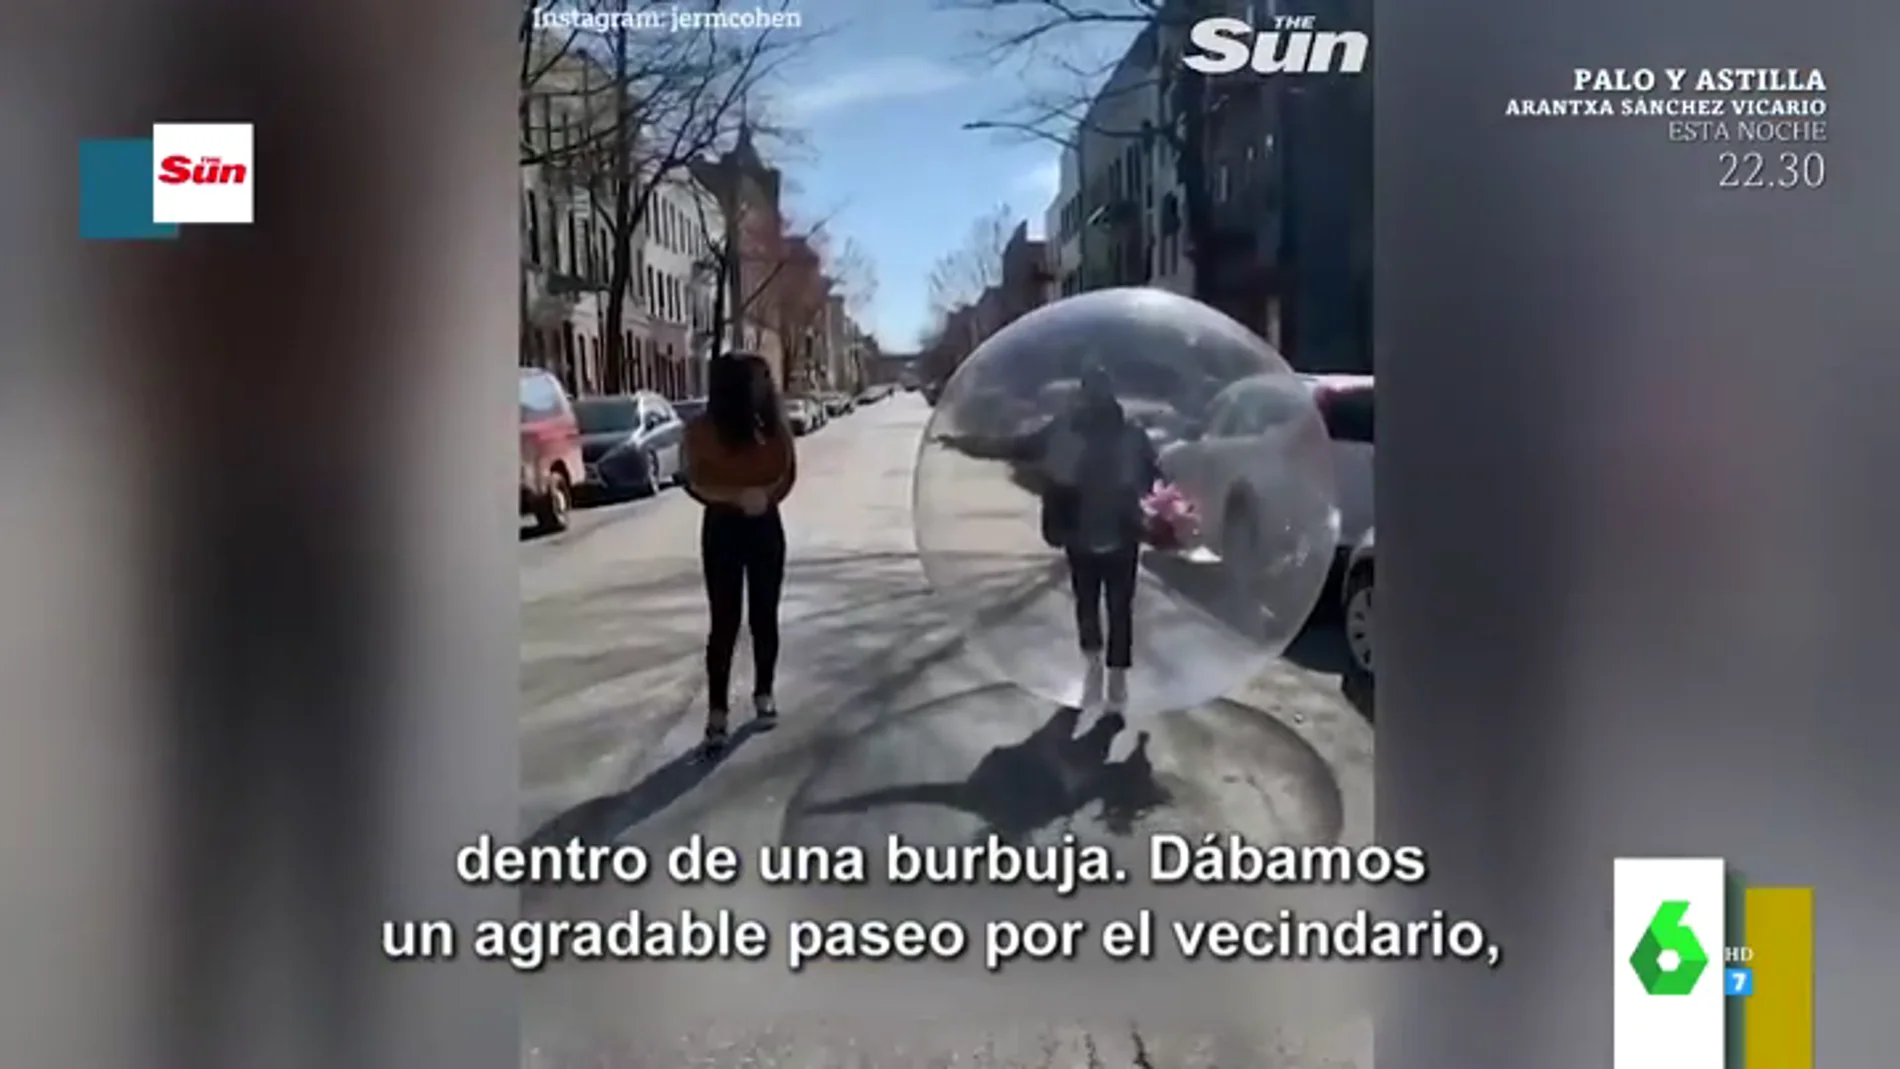 El sorprendente momento en el que la Policía para a un joven que paseaba con su novia dentro de una burbuja de plástico gigante